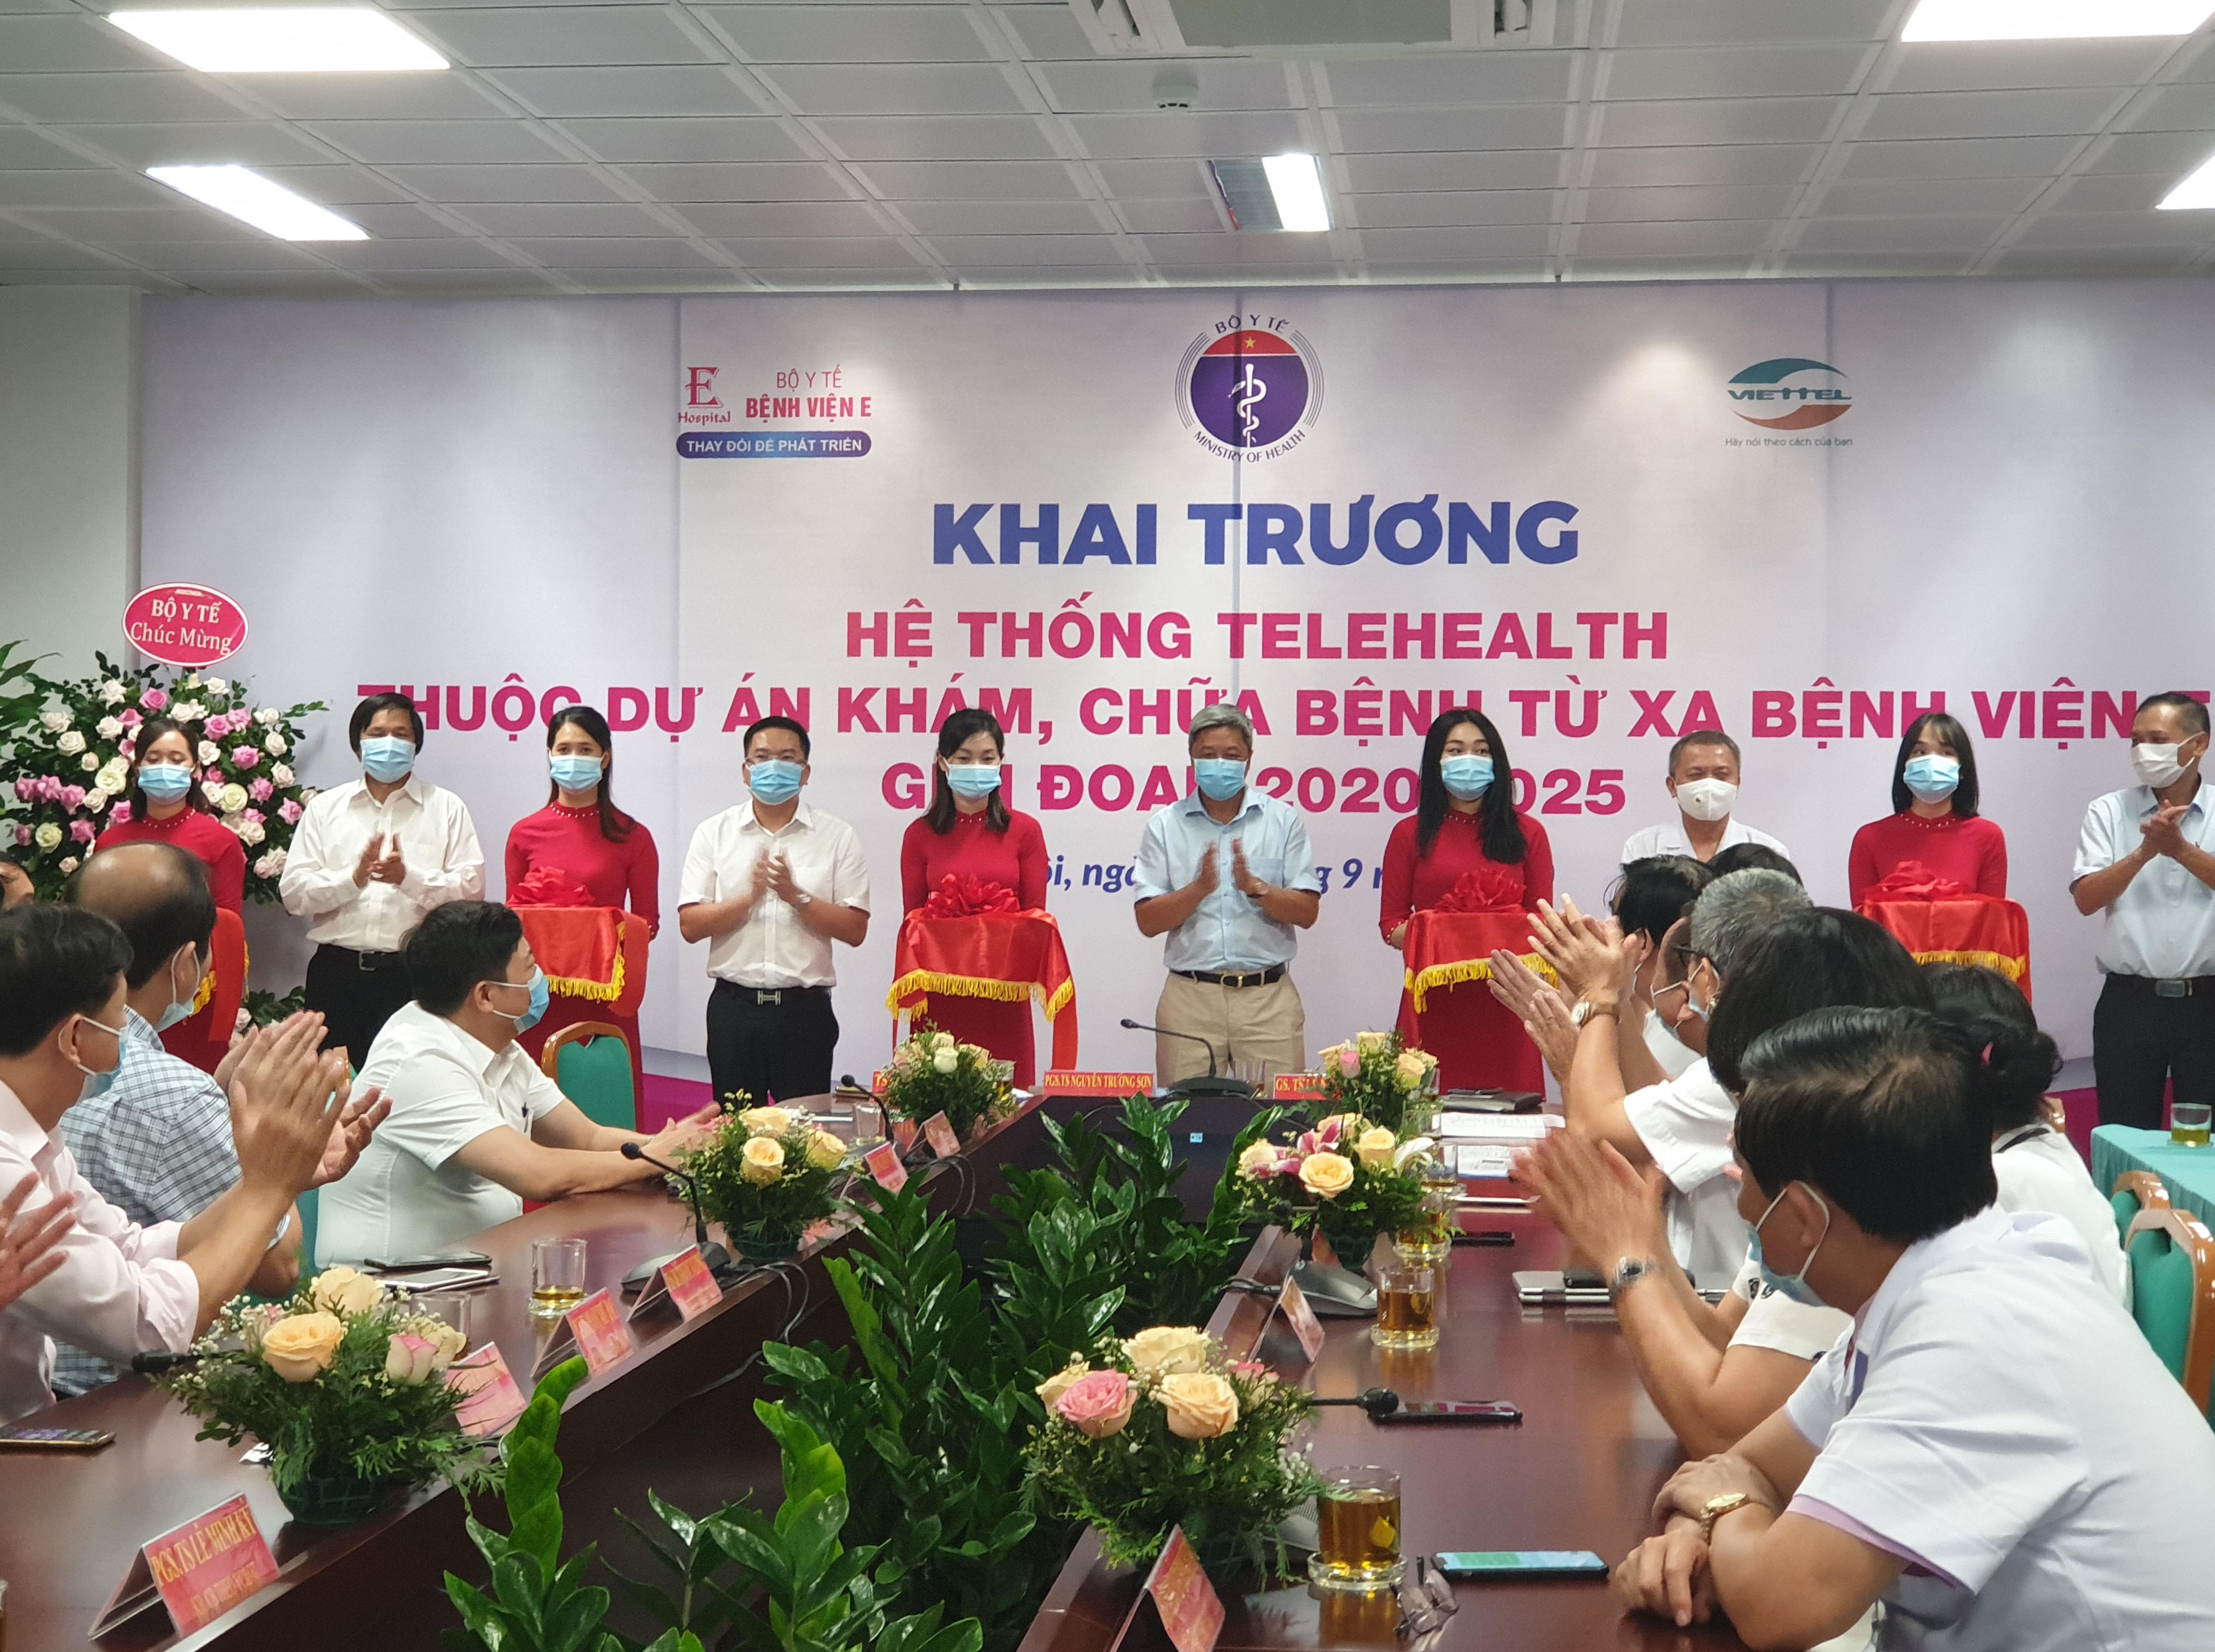 Ảnh: Thứ trưởng Bộ Y tế Nguyễn Trường Sơn cắt băng khánh thành TeleHealth bệnh viện E, nhấn mạnh, đây là hệ thống hữu ích cho bệnh nhân yếu thế, ở vùng sâu vùng xa